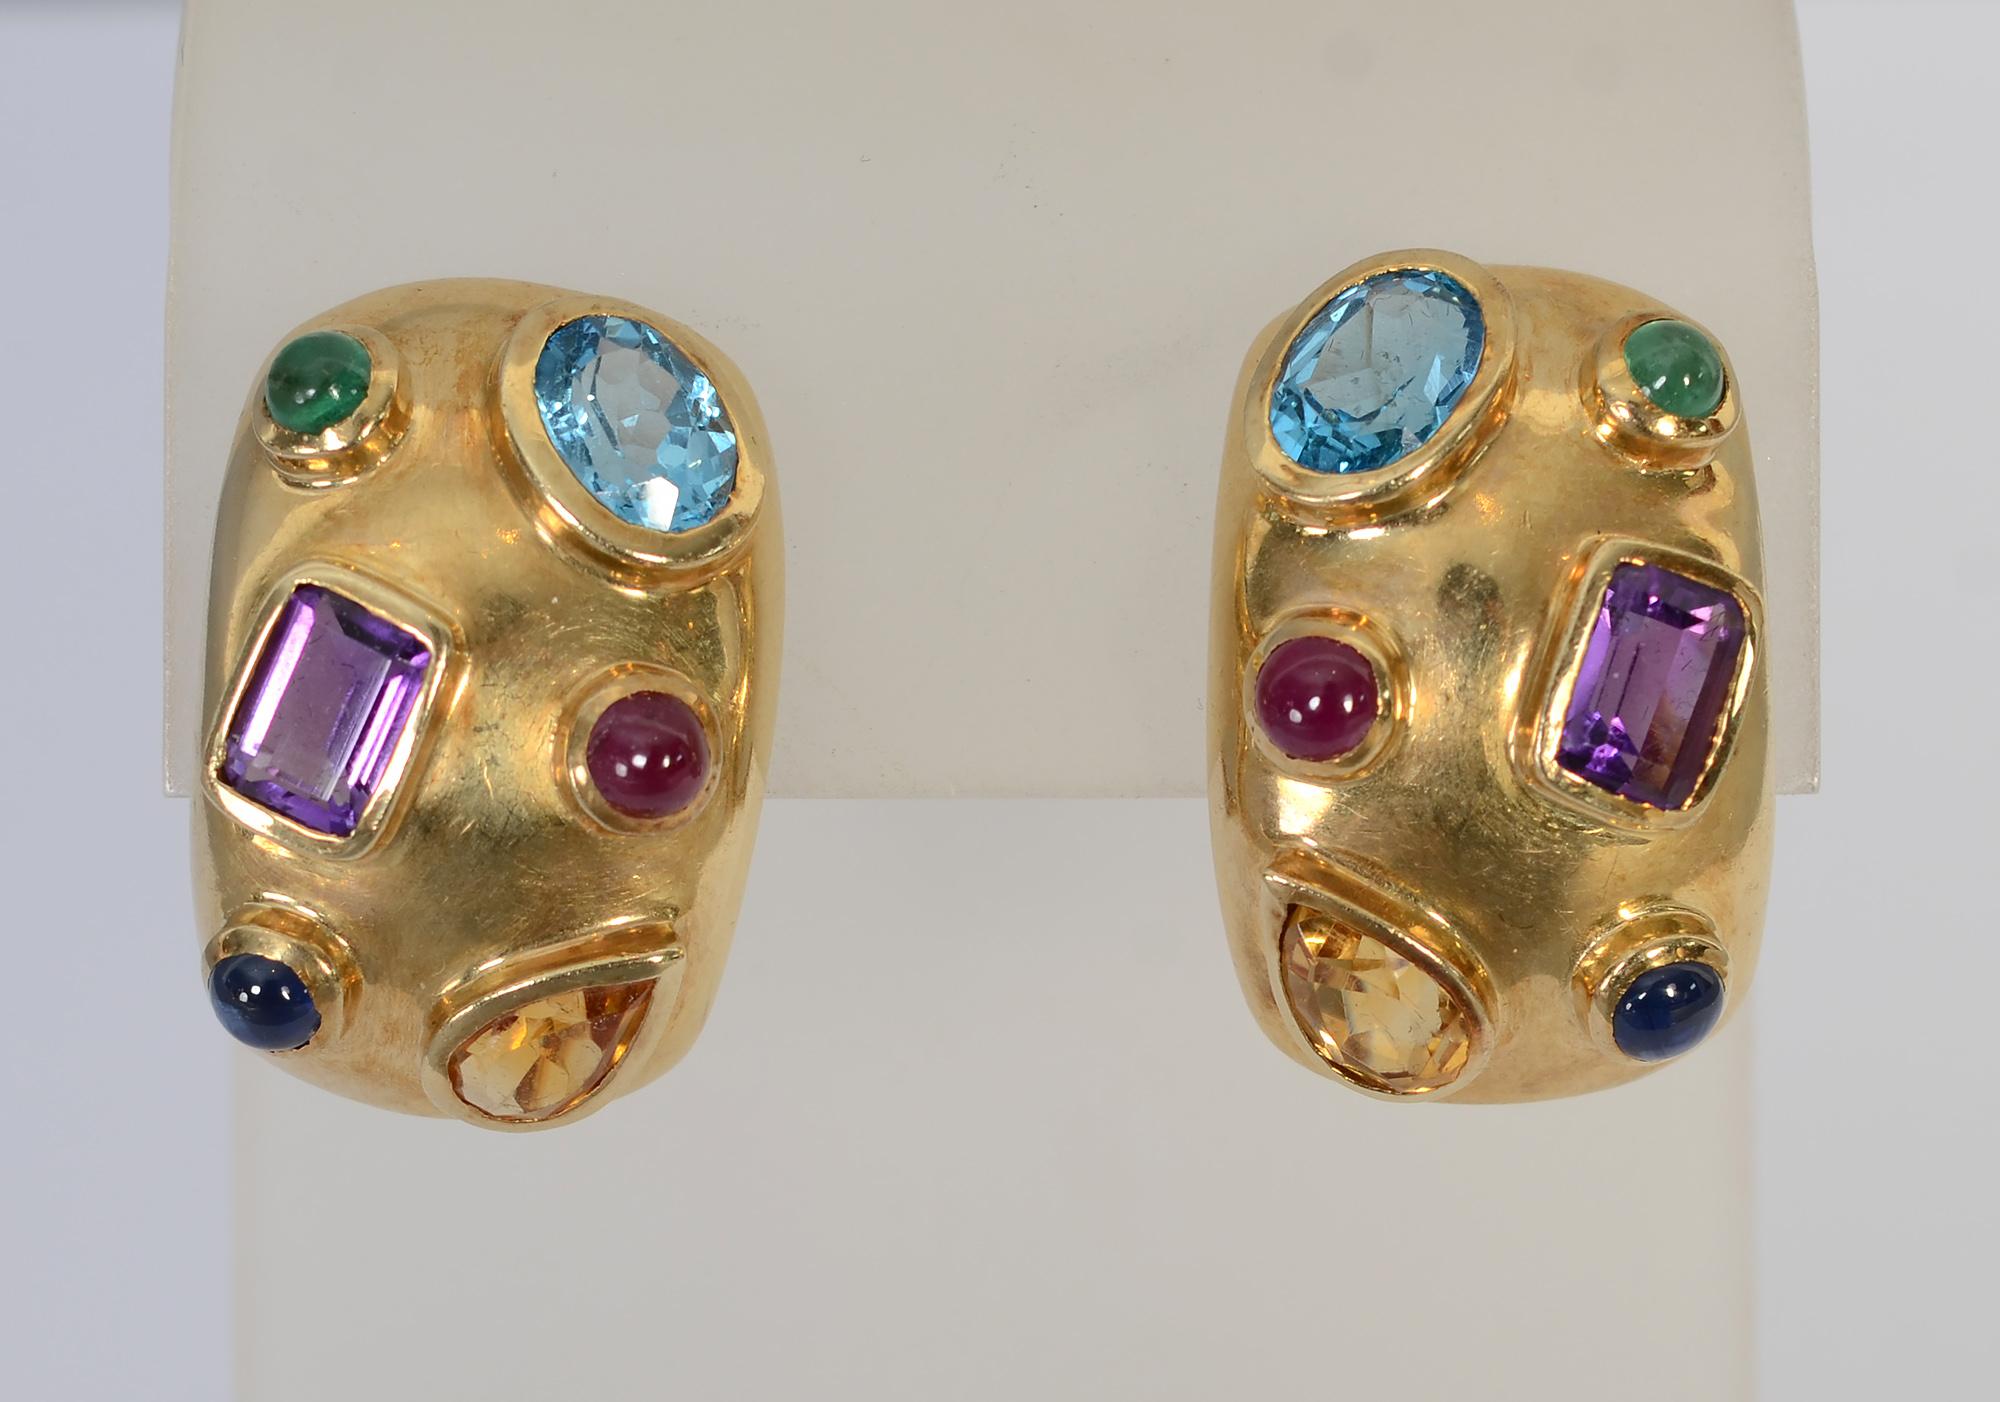 Festliche und farbenfrohe 14-Karat-Ohrringe mit Steinen wie Amethyst, Citrin, Blautopas und Turmalin. Die Steine haben eine Vielzahl von Formen und Größen. Die Rückseiten sind Pfosten und Klammern. Unterzeichnet CK.
Die Ohrringe sind 3/4